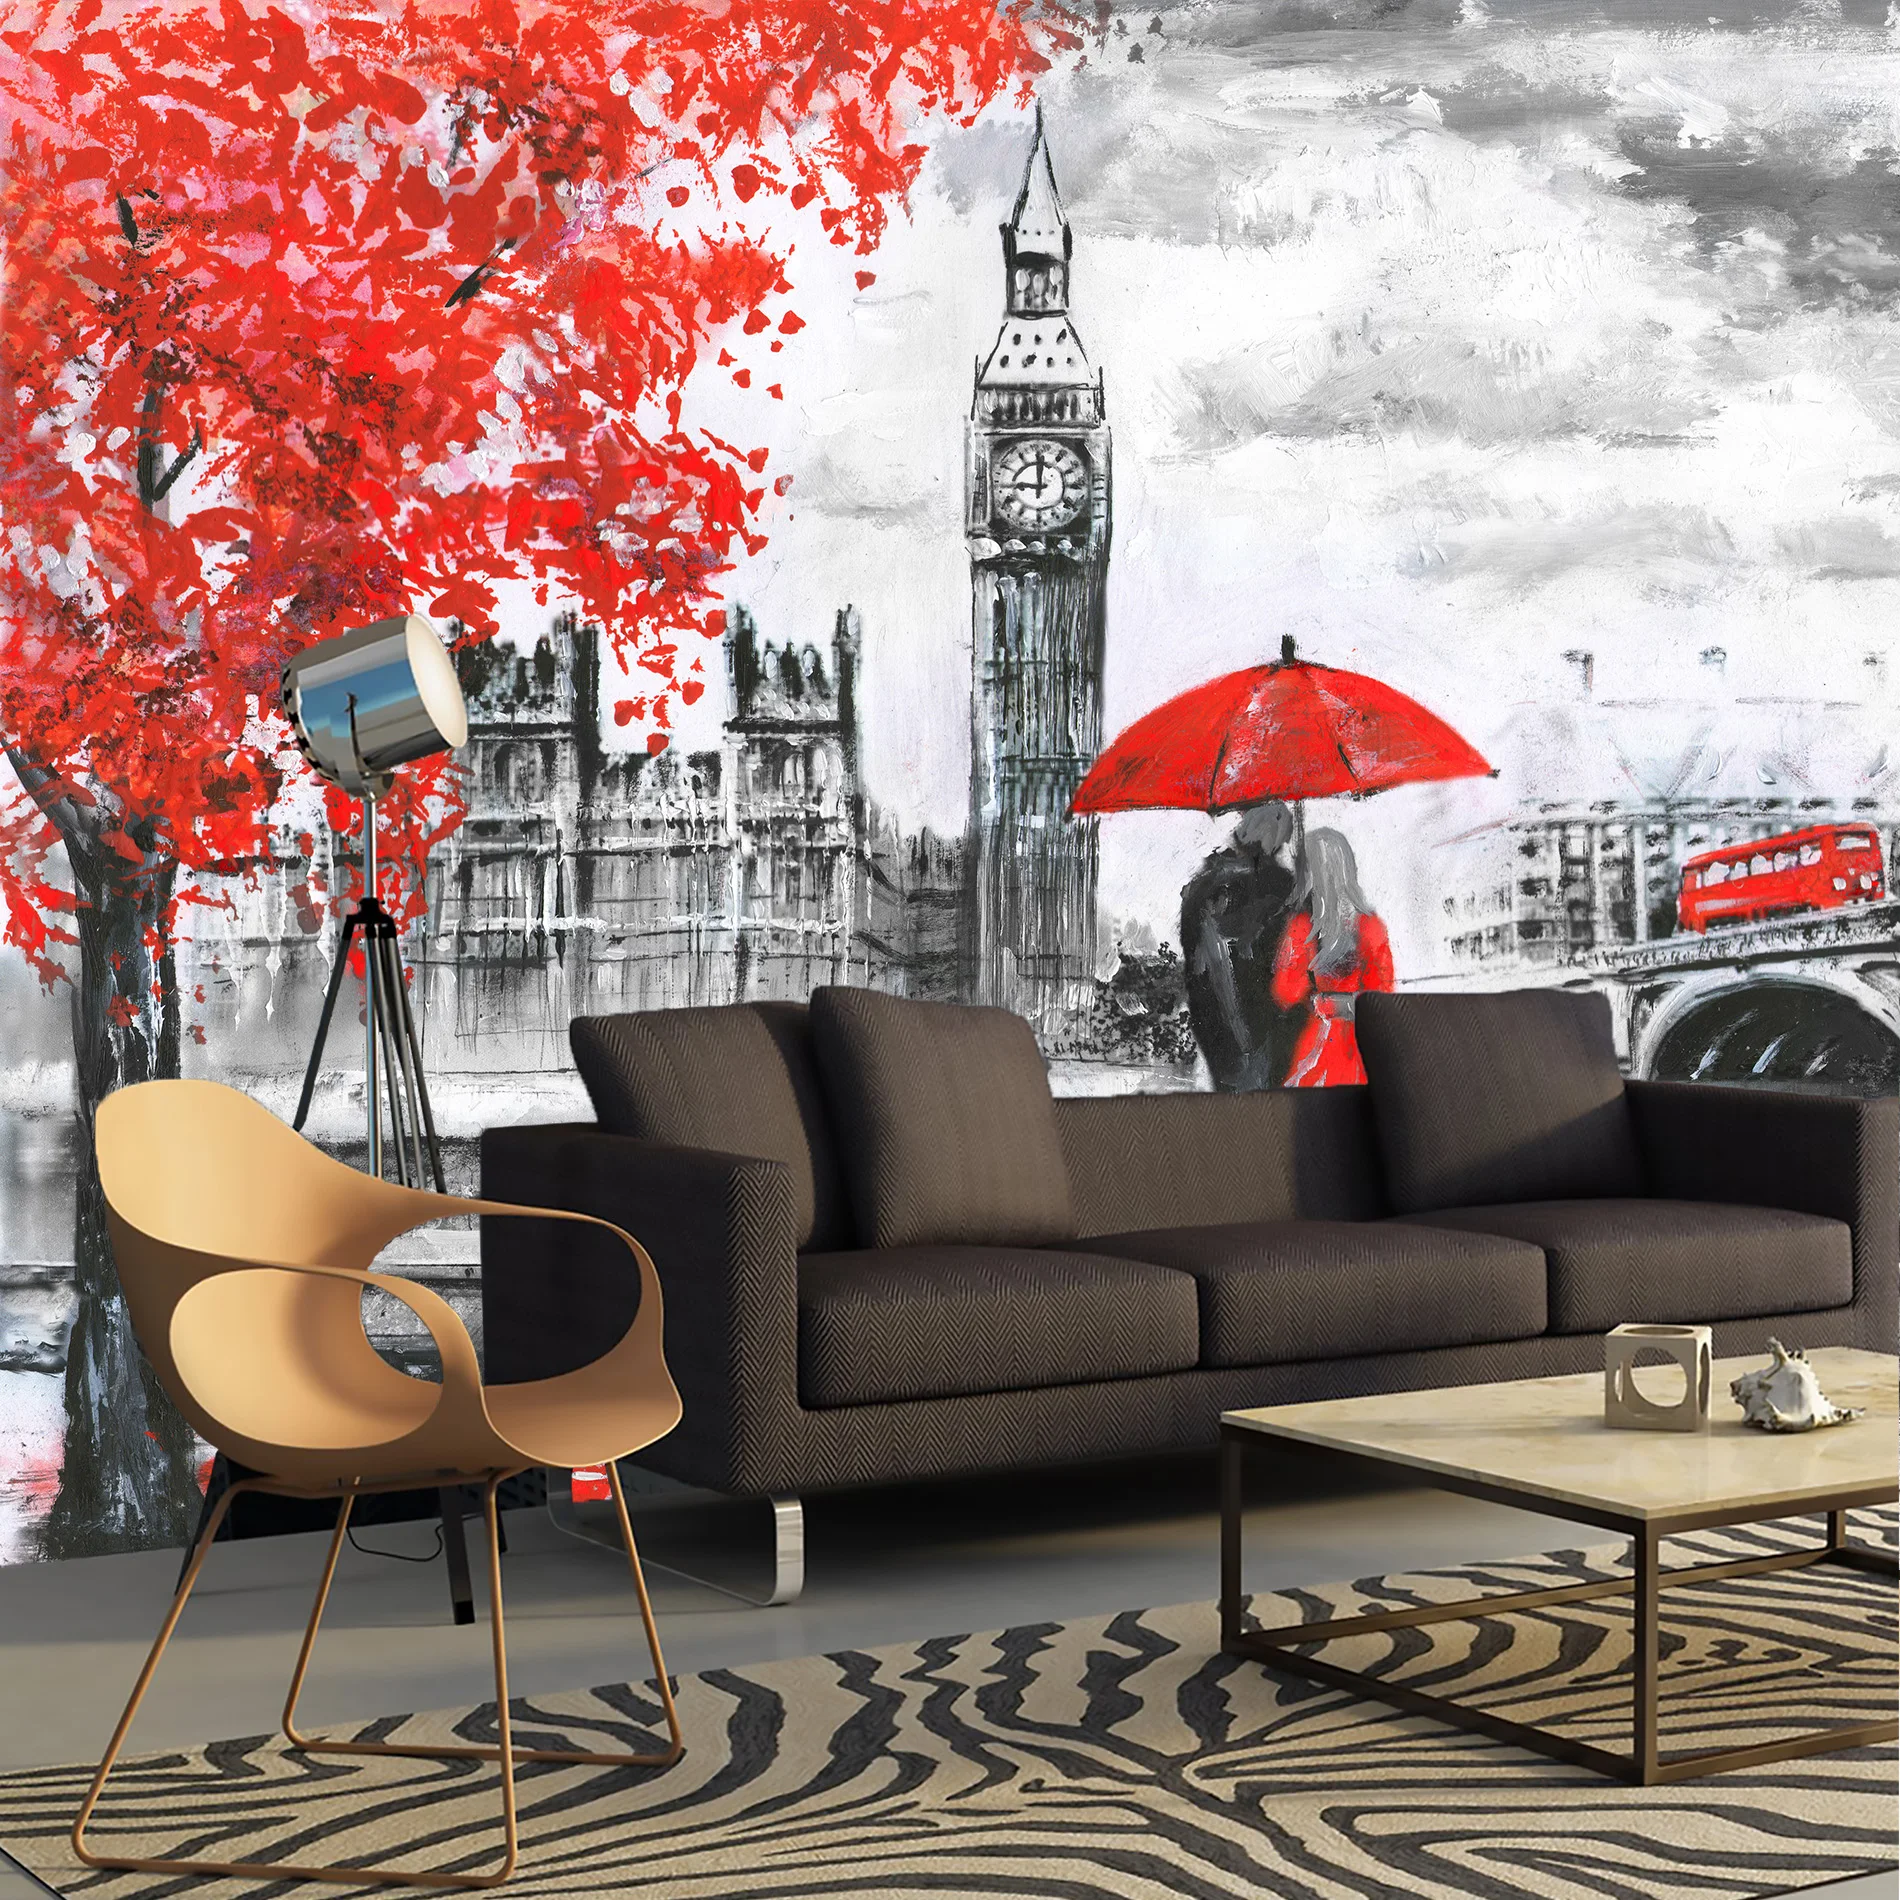 3D nástennú maľbu Londýne obrázok Anglicko, čierne a biele tapety, tapety pre hala, kuchyňa, spálňa, nástennú maľbu rozširuje priestor